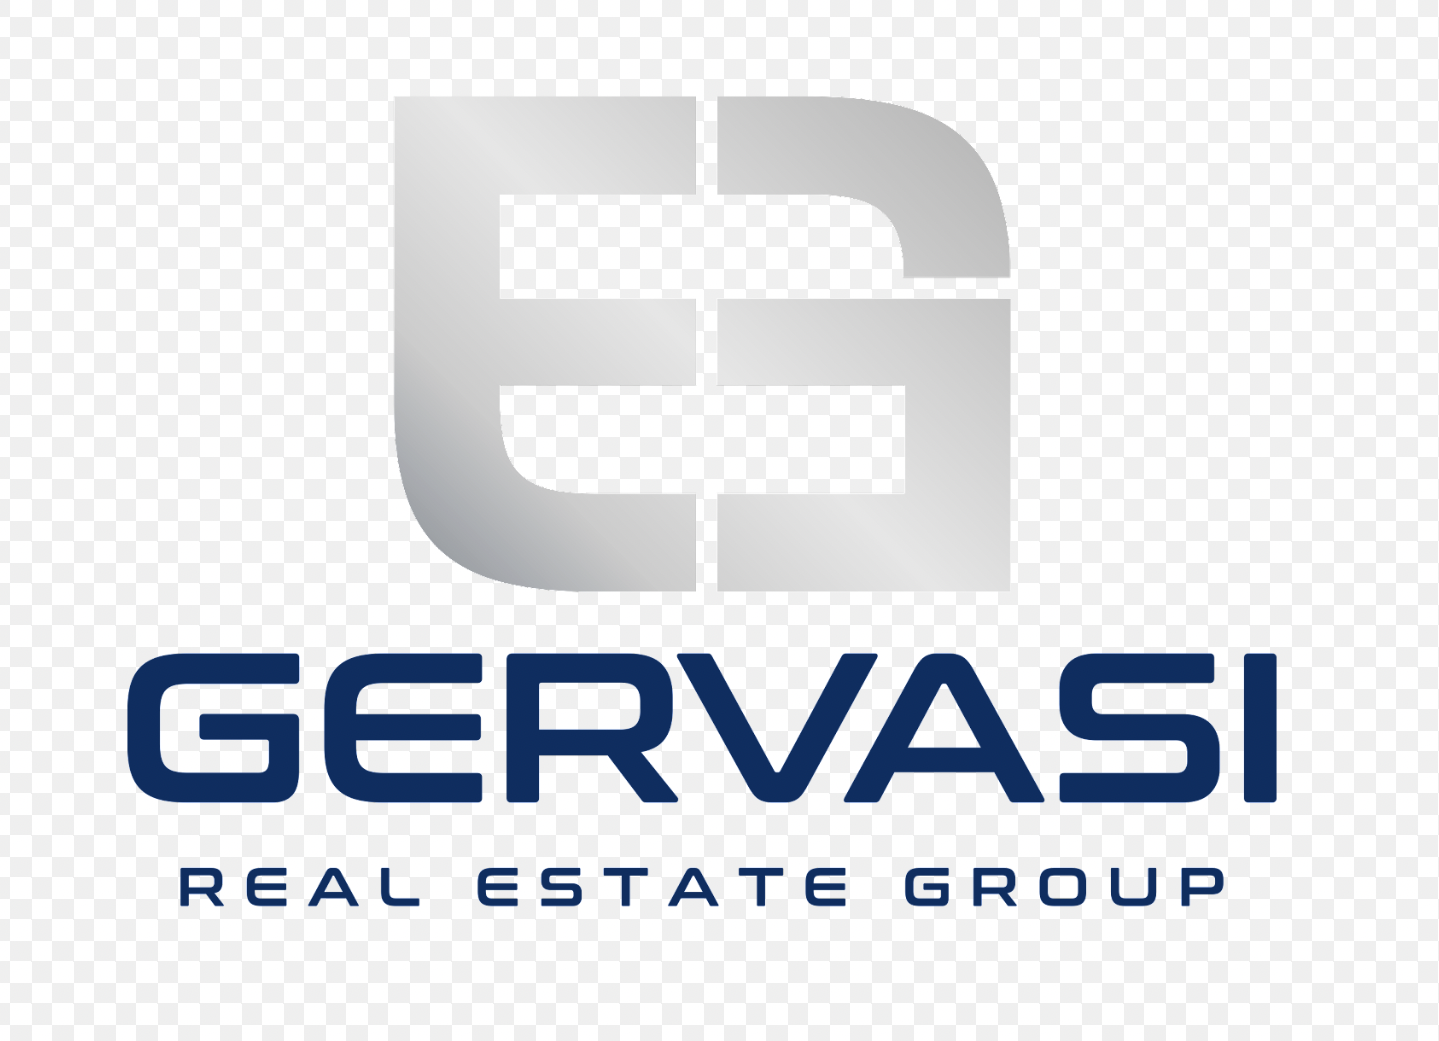 Gervasi Real Estate Group